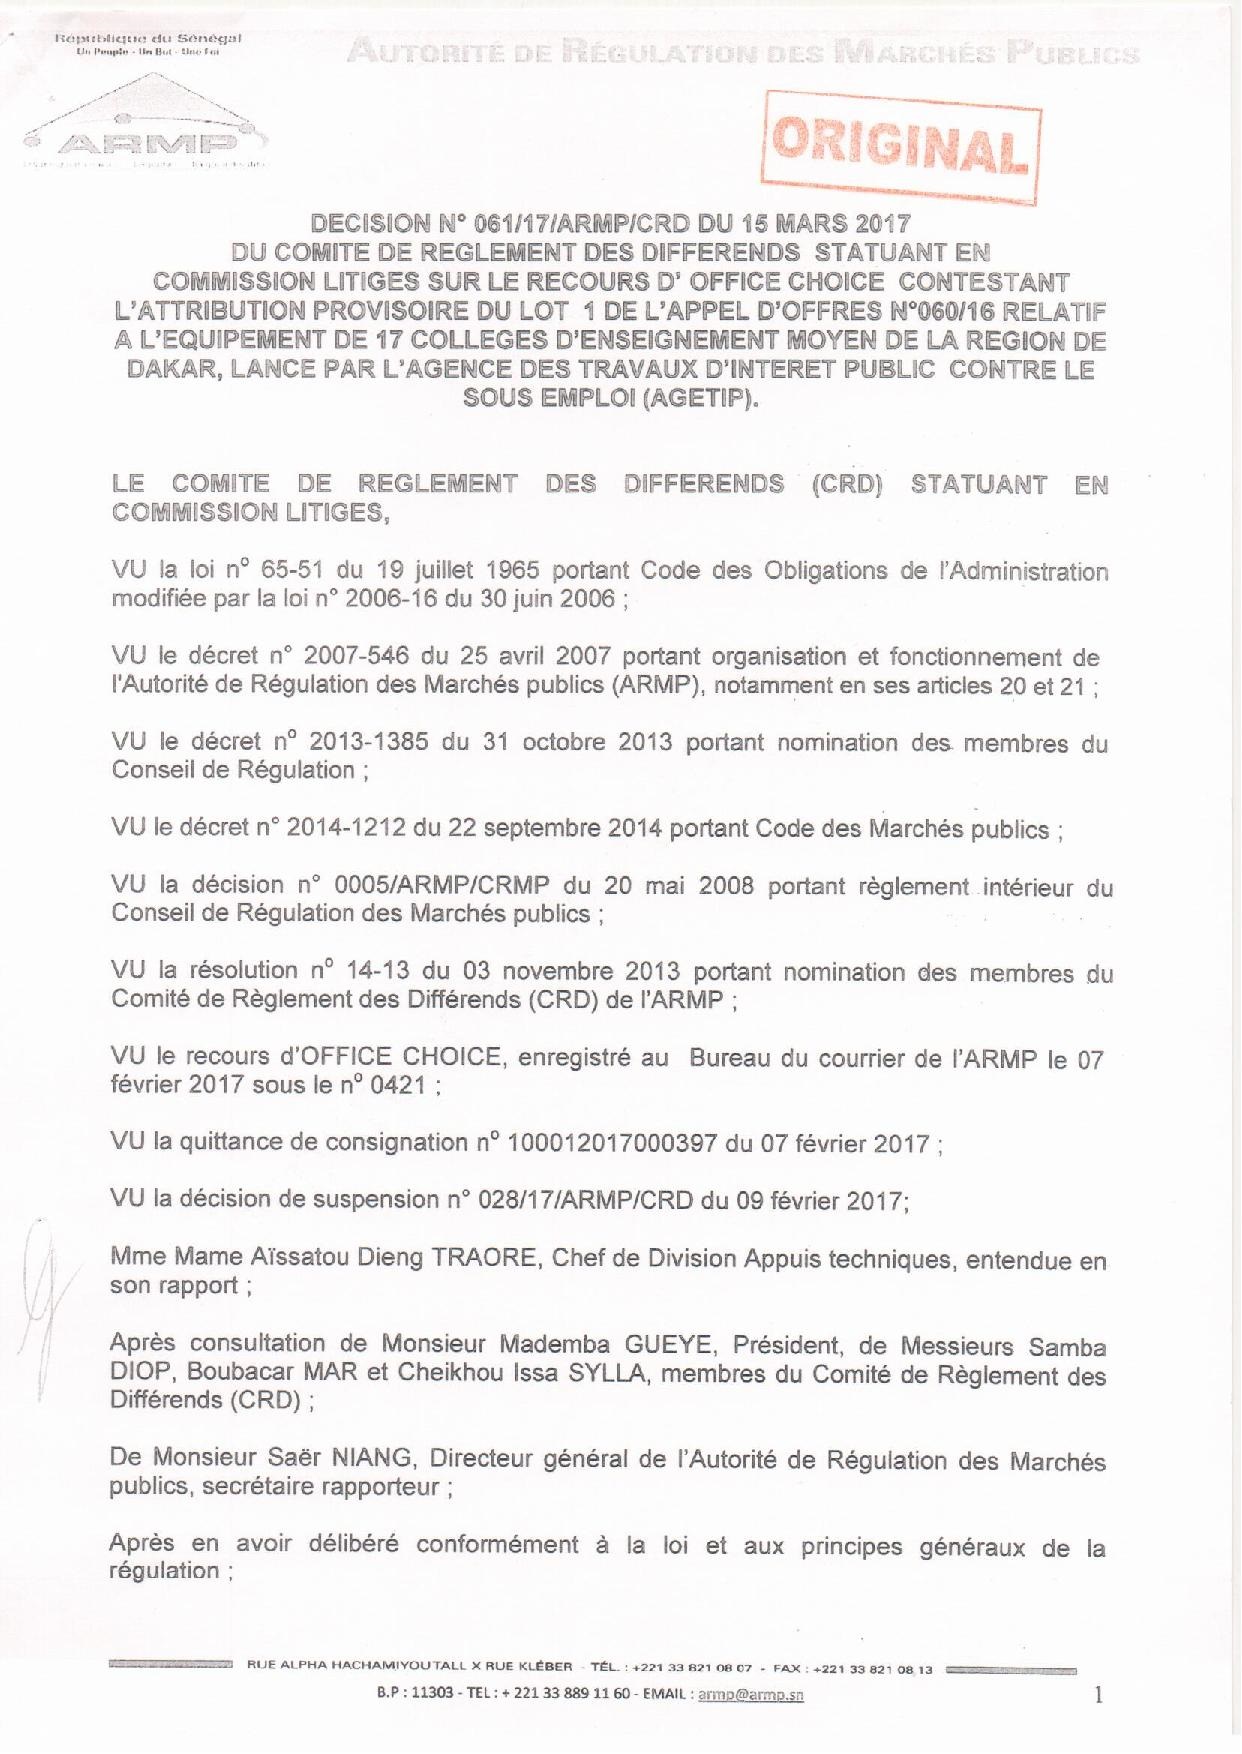 Exclusif : AGETIP Office Choice,  L'ARMP a tranché l'appel d'offres relatif à l'équipement de 17 collèges de Dakar